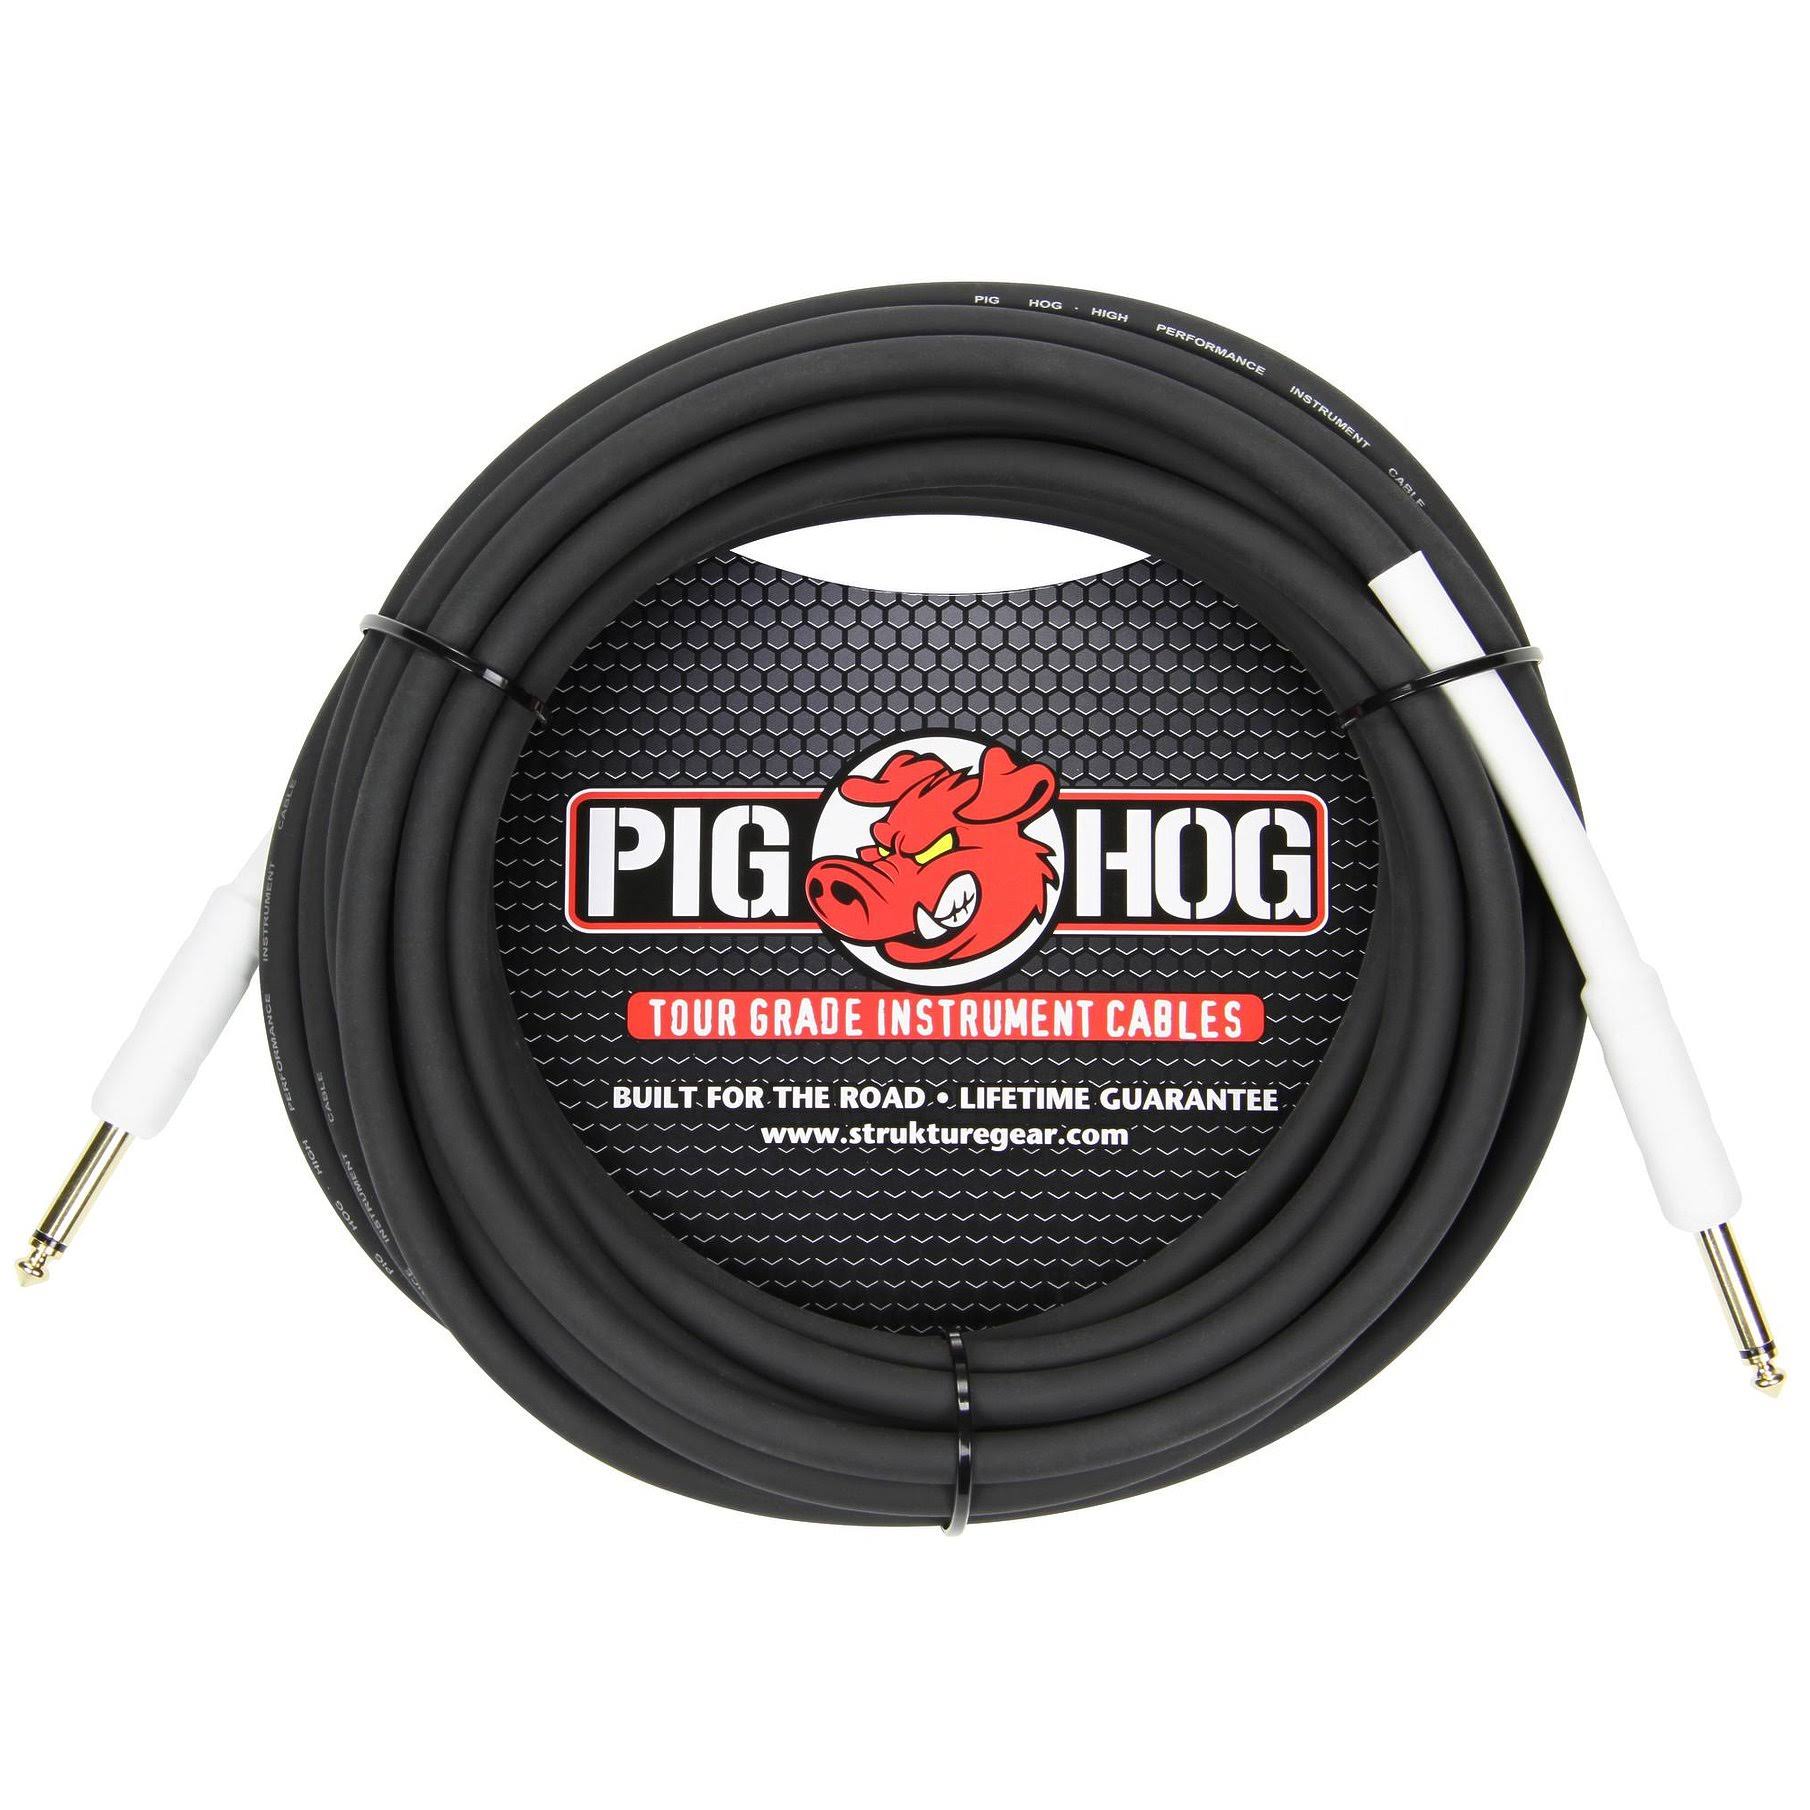 Pig Hog Tour Grade Instrument Cable - 18.6', 8mm